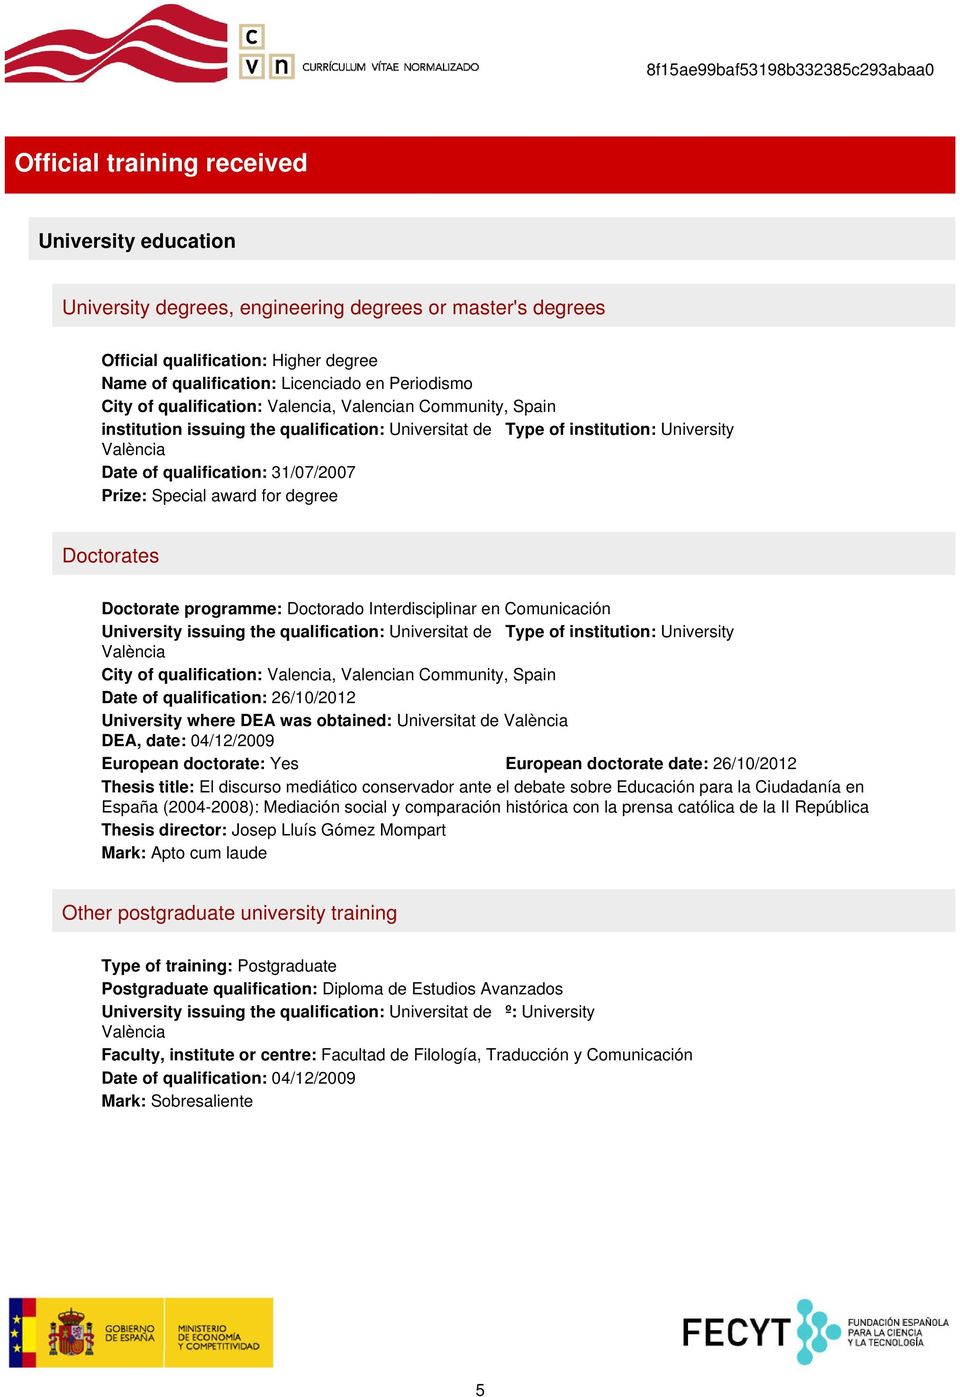 Doctorate programme: Doctorado Interdisciplinar en Comunicación University issuing the qualification: Universitat de València City of qualification: Valencia, Valencian Community, Spain Date of